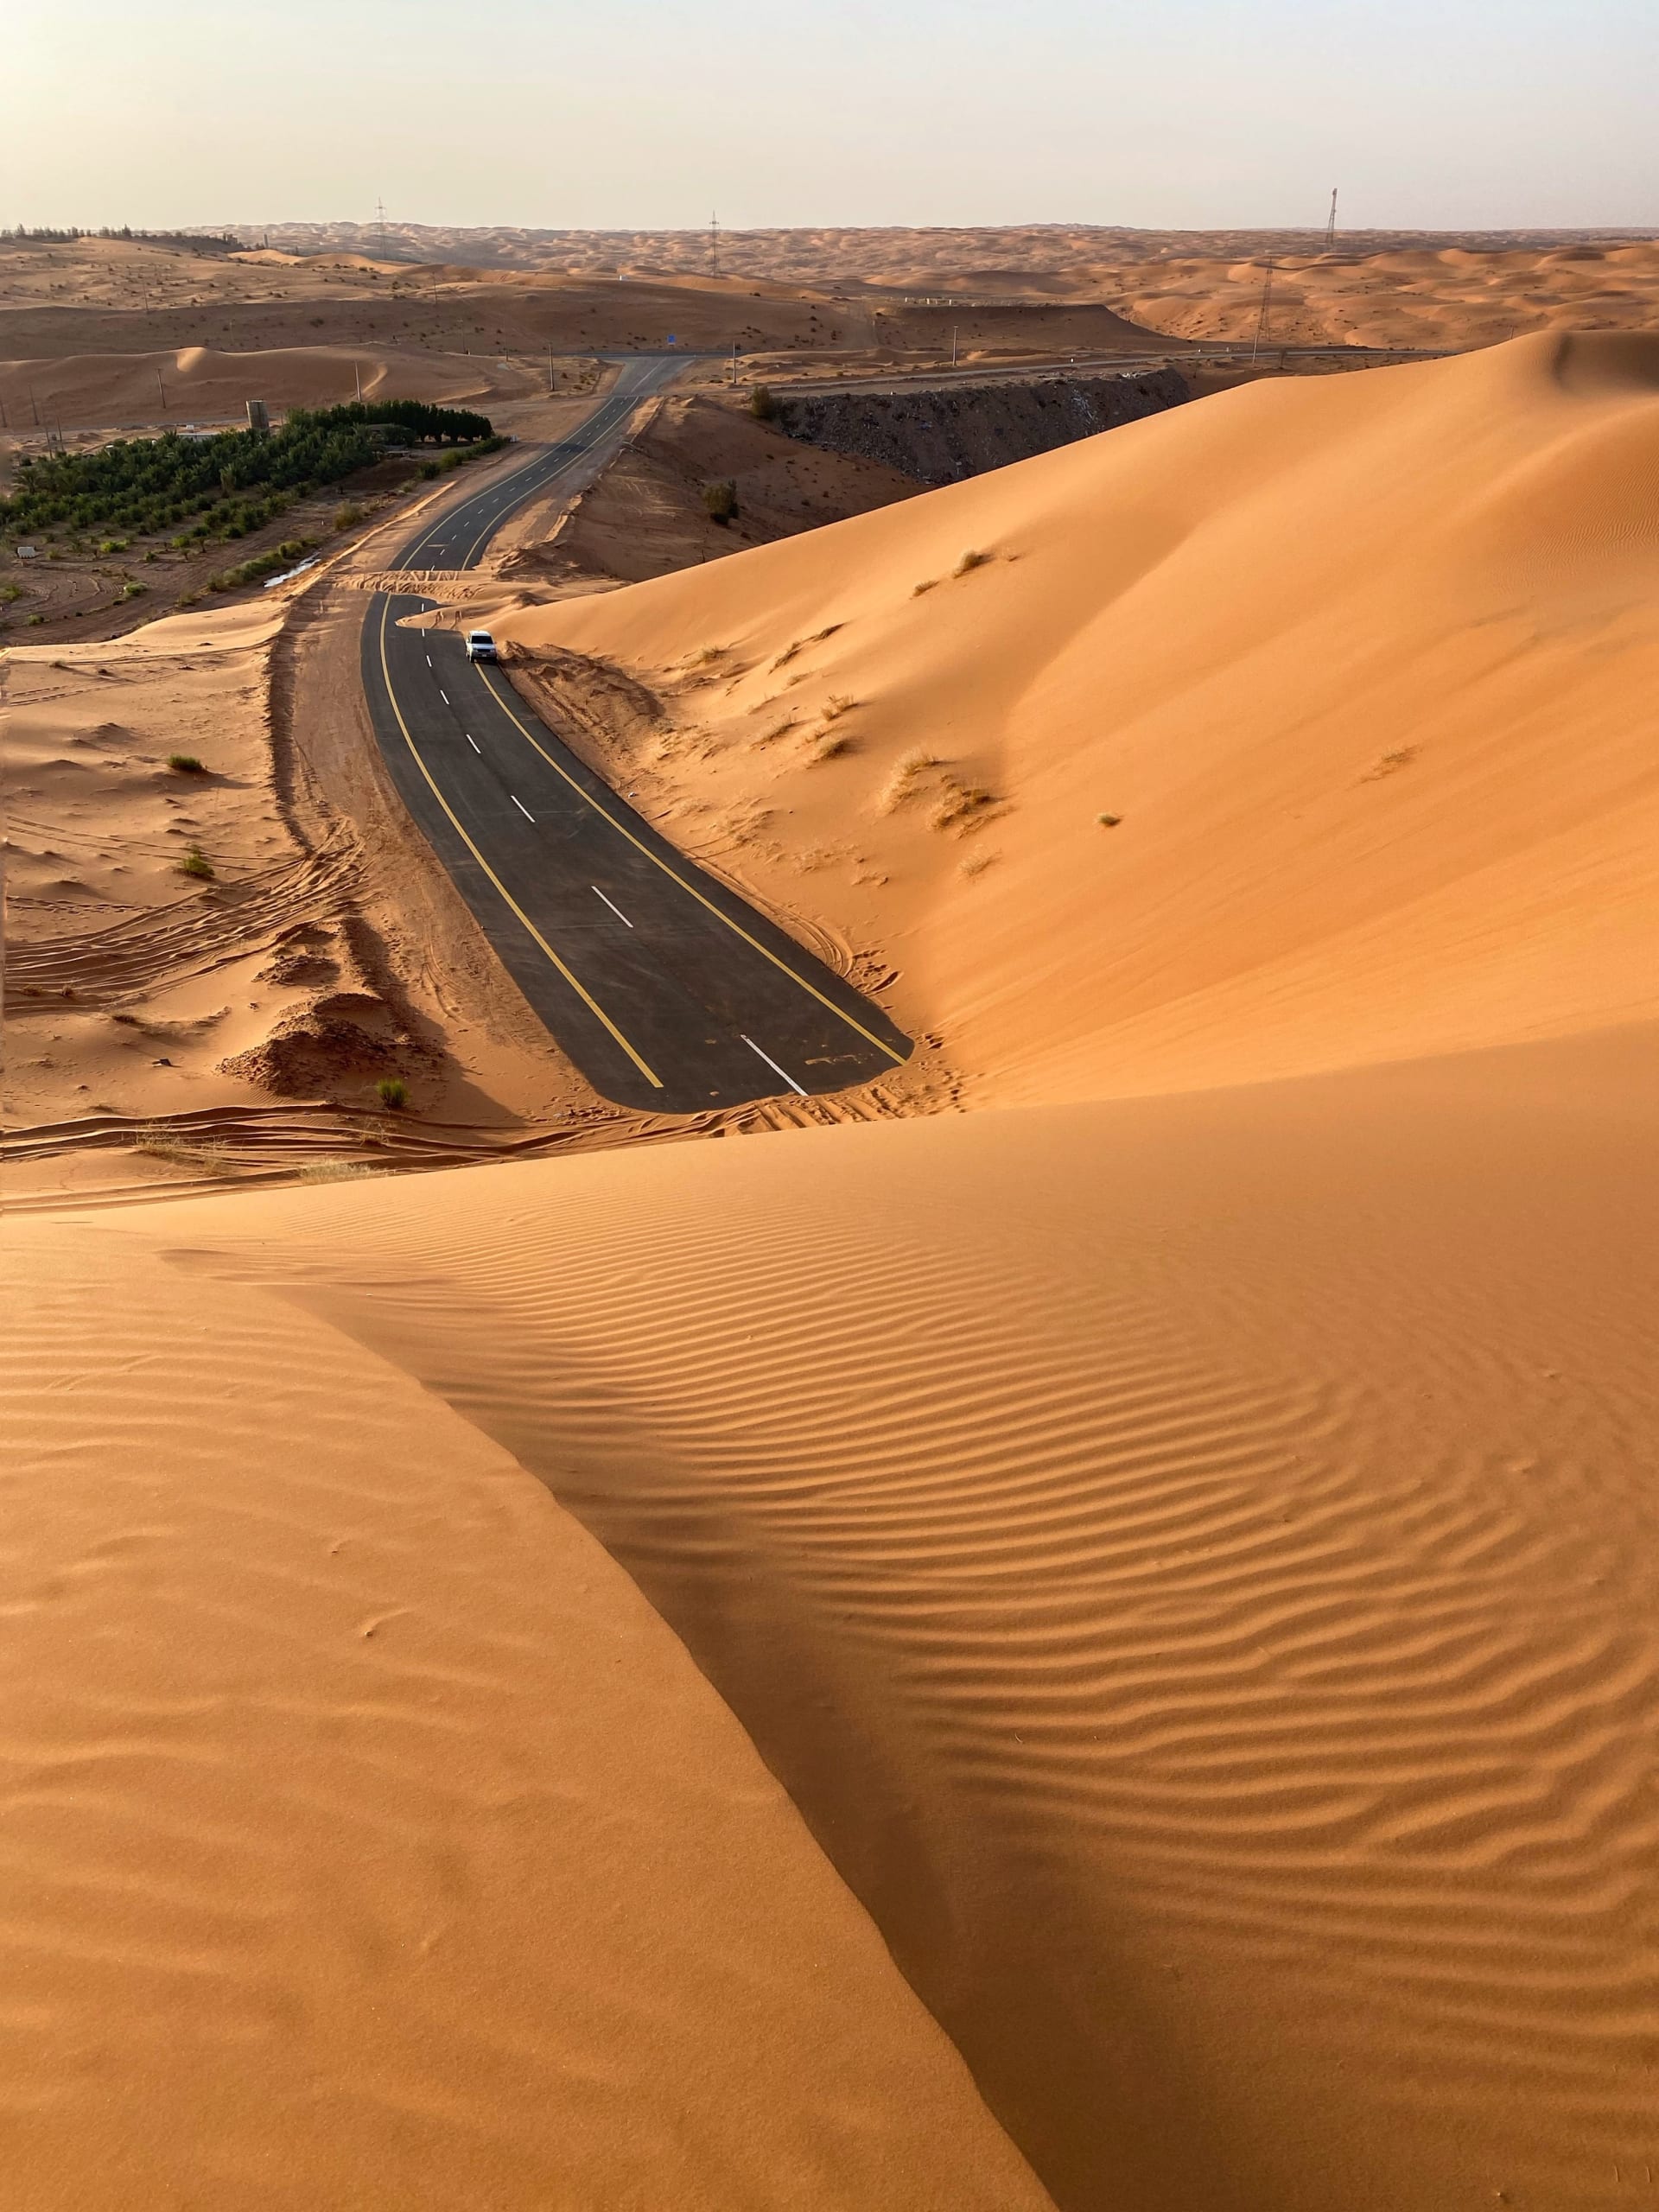 In Saudi-Arabien dokumentiert ein Fotograf einen bezaubernden Spaziergang am Ende einer mit goldenem Sand bedeckten Straße